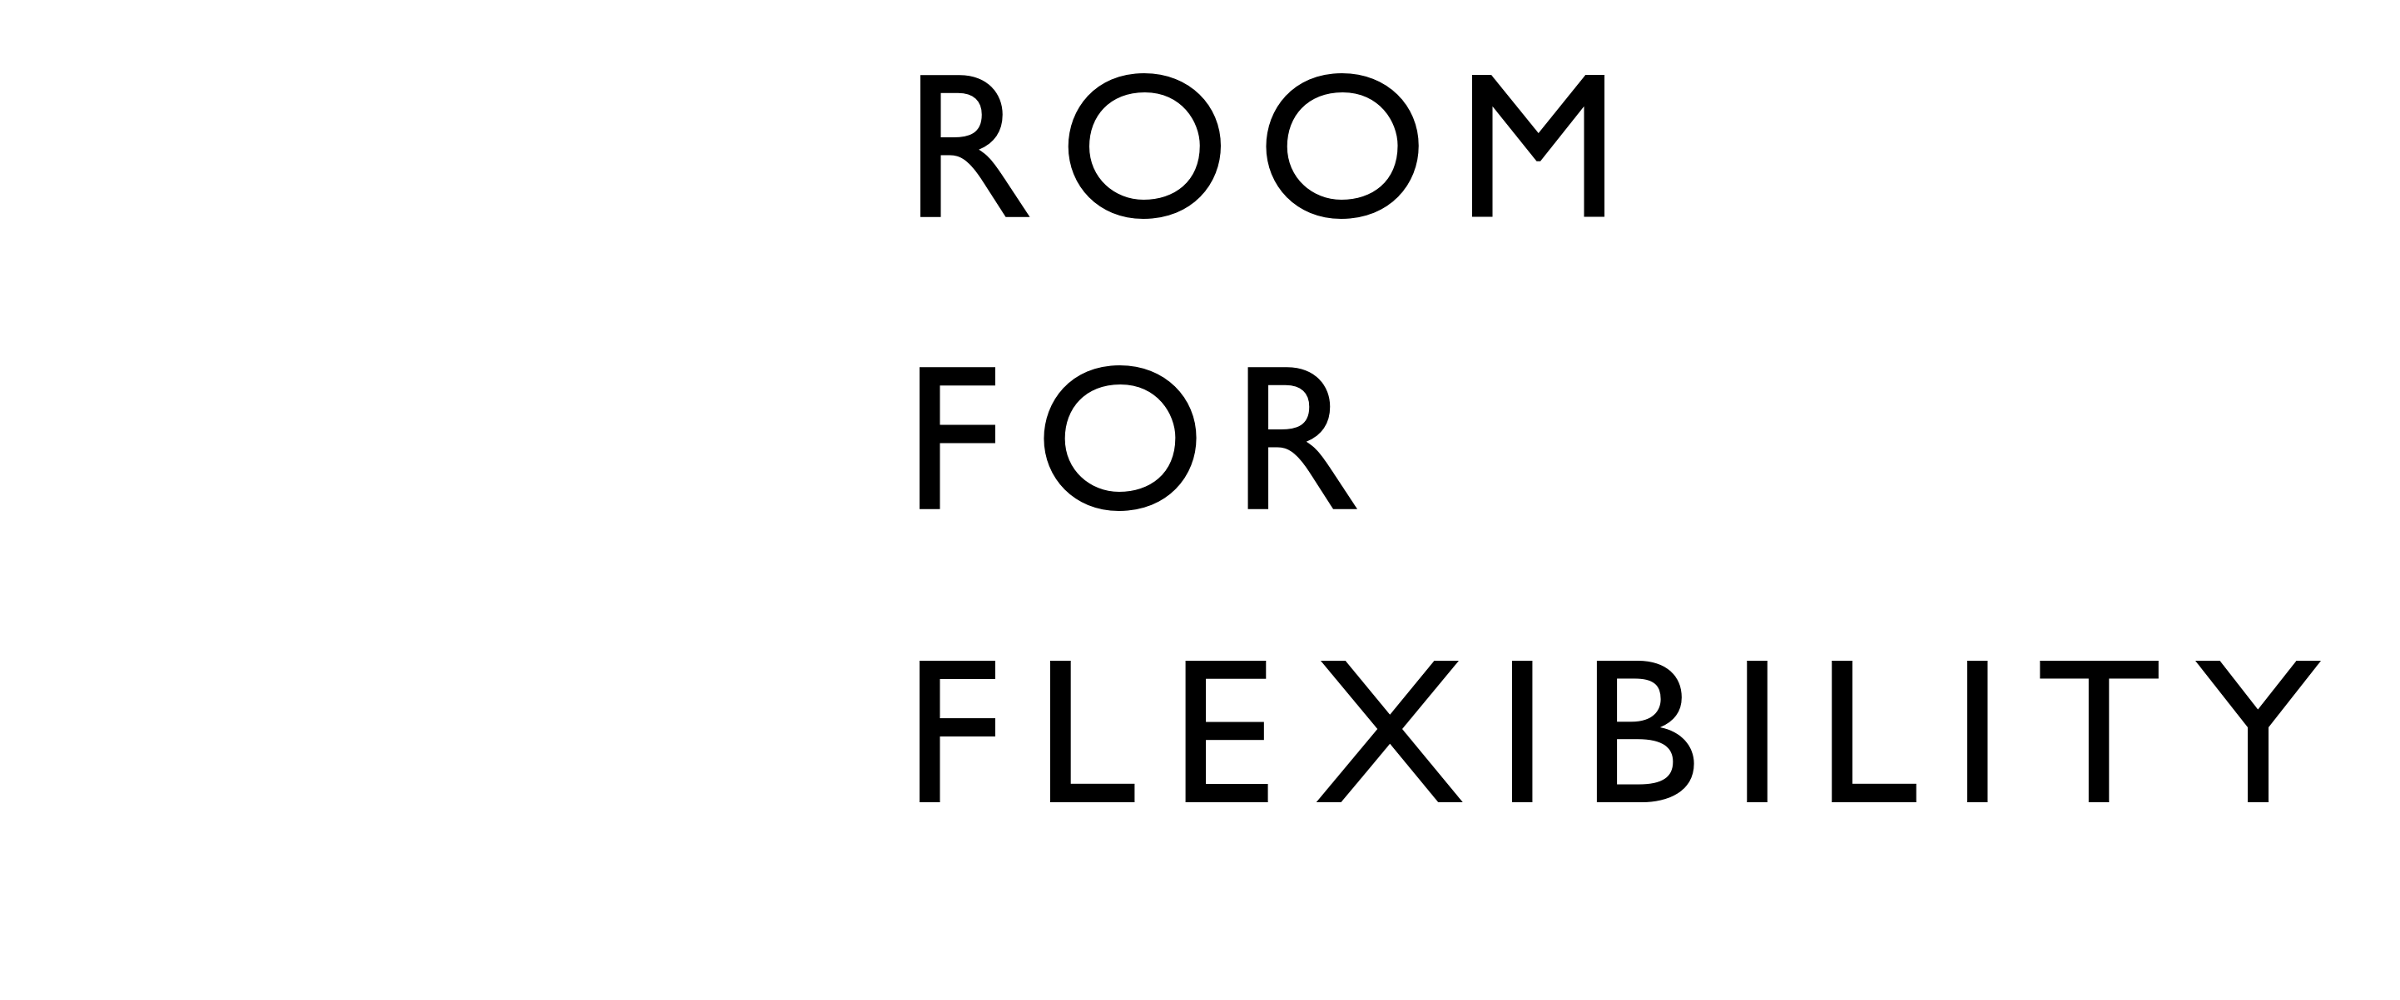 Room for Living - Room for Flexibility